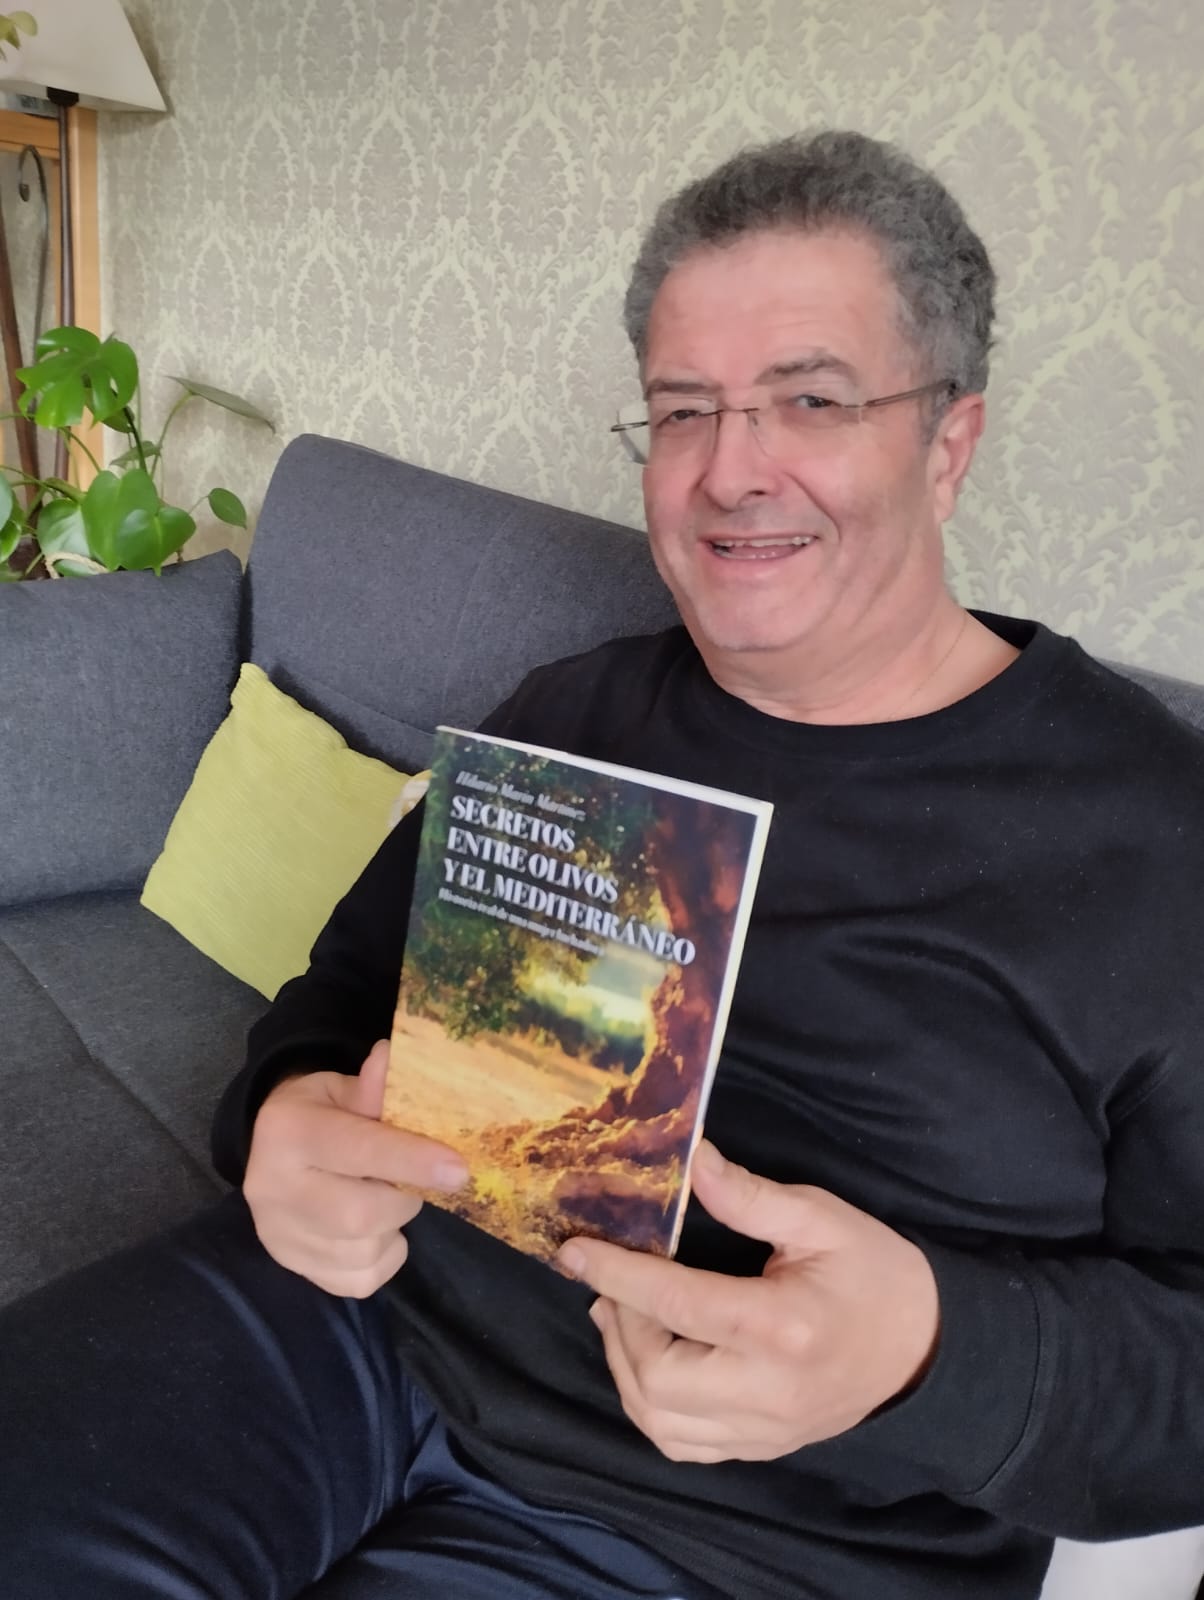 Conoce la nueva novela de Hilario Marín, «Secretos entre olivos y el Mediterráneo»